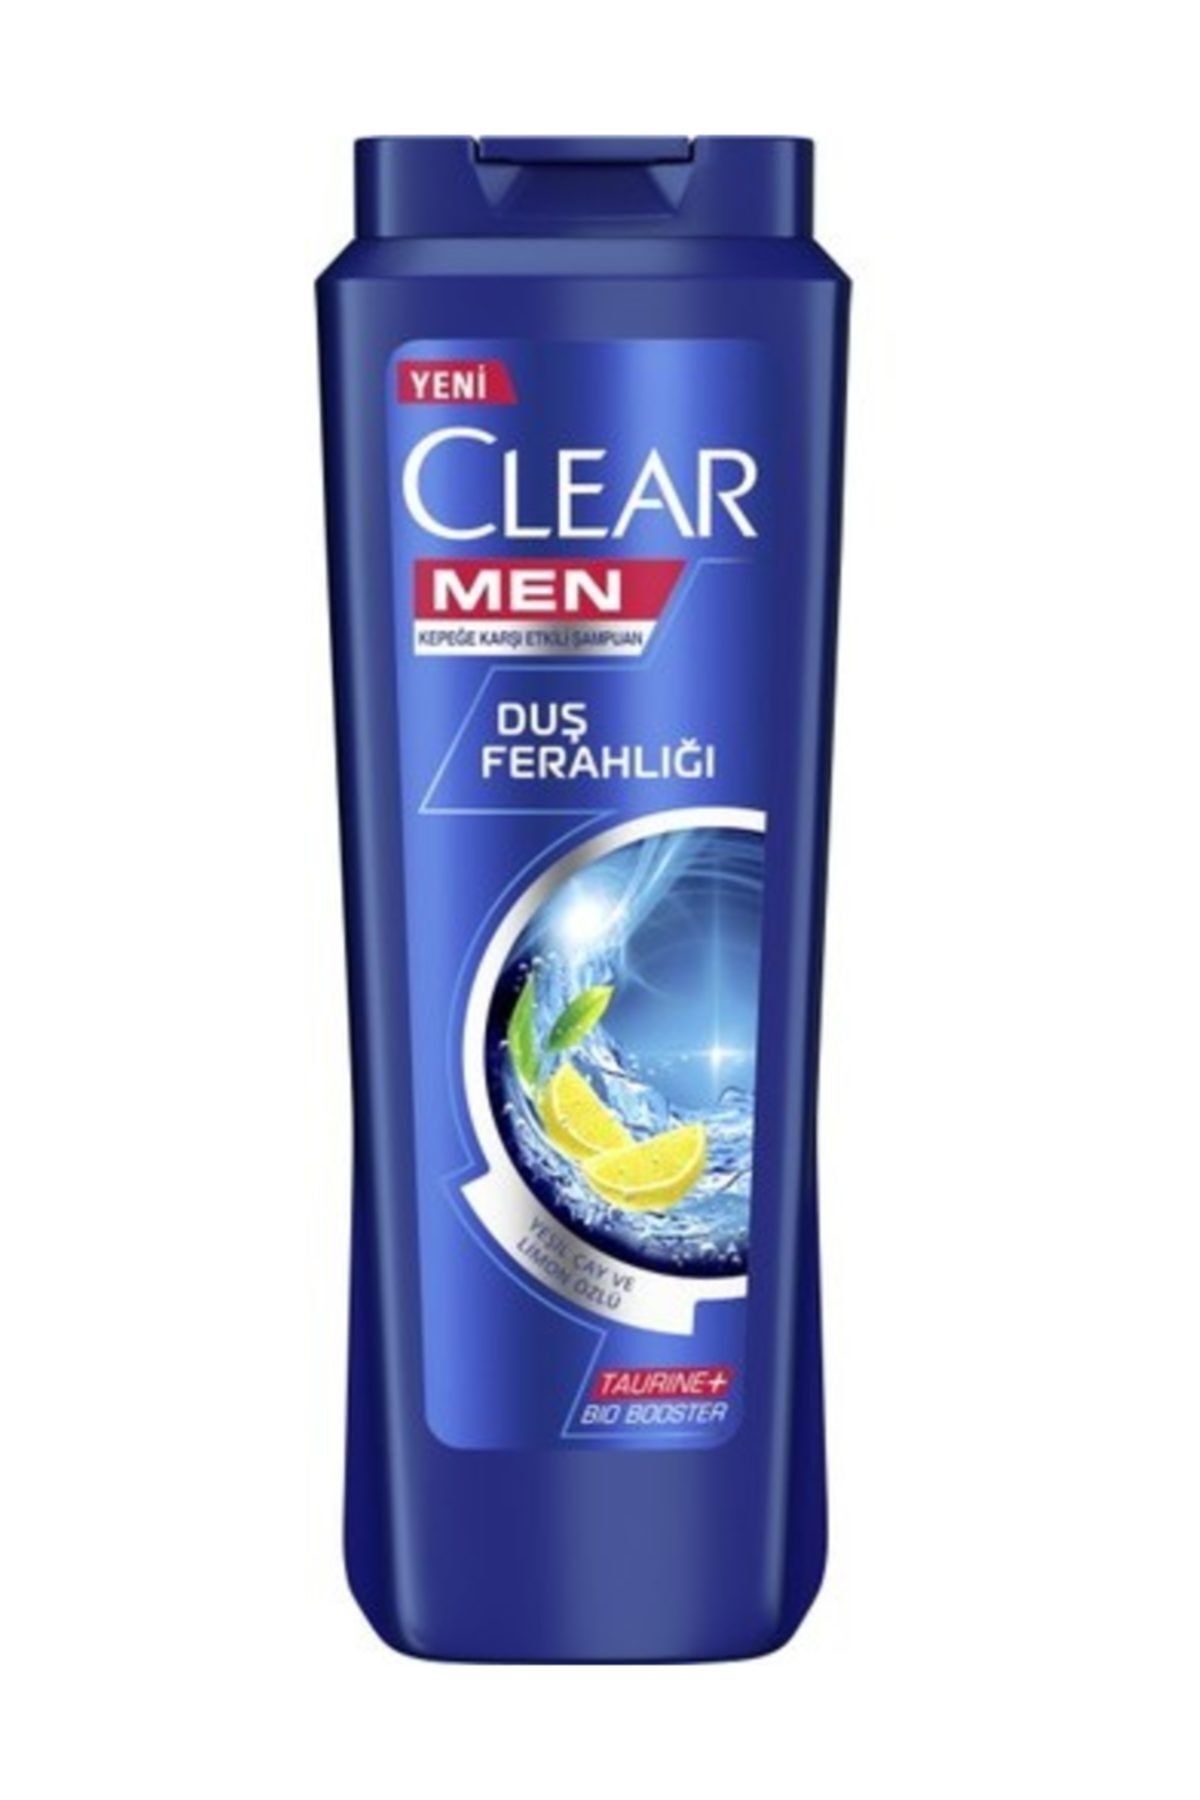 Clear Men Duş Ferahlığı Şampuan 500 ml